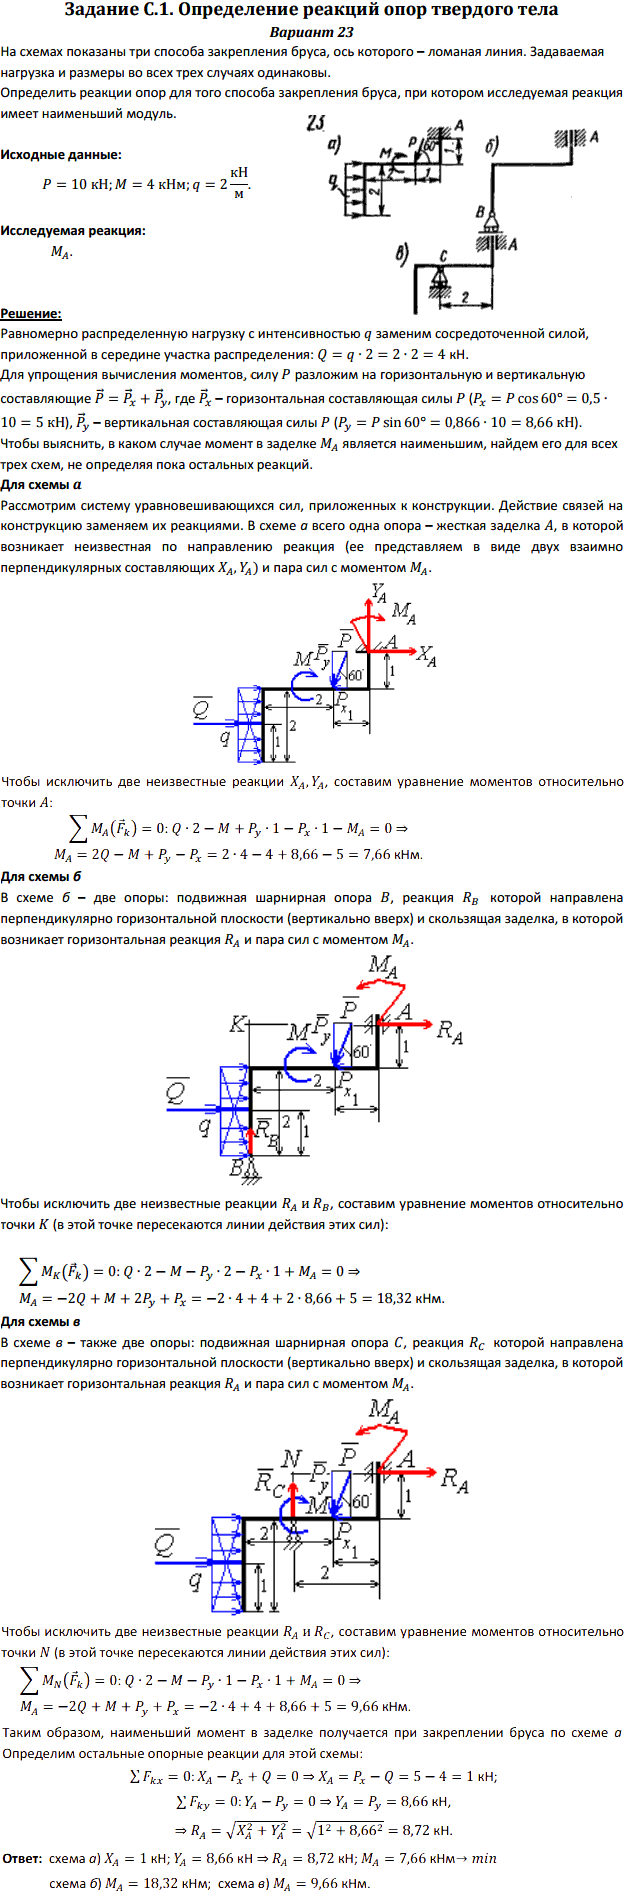 Задание C1 вариант 23. P=10 кН, M=4 кН*м, q=2 кН/м, исследуемая реакция MA.